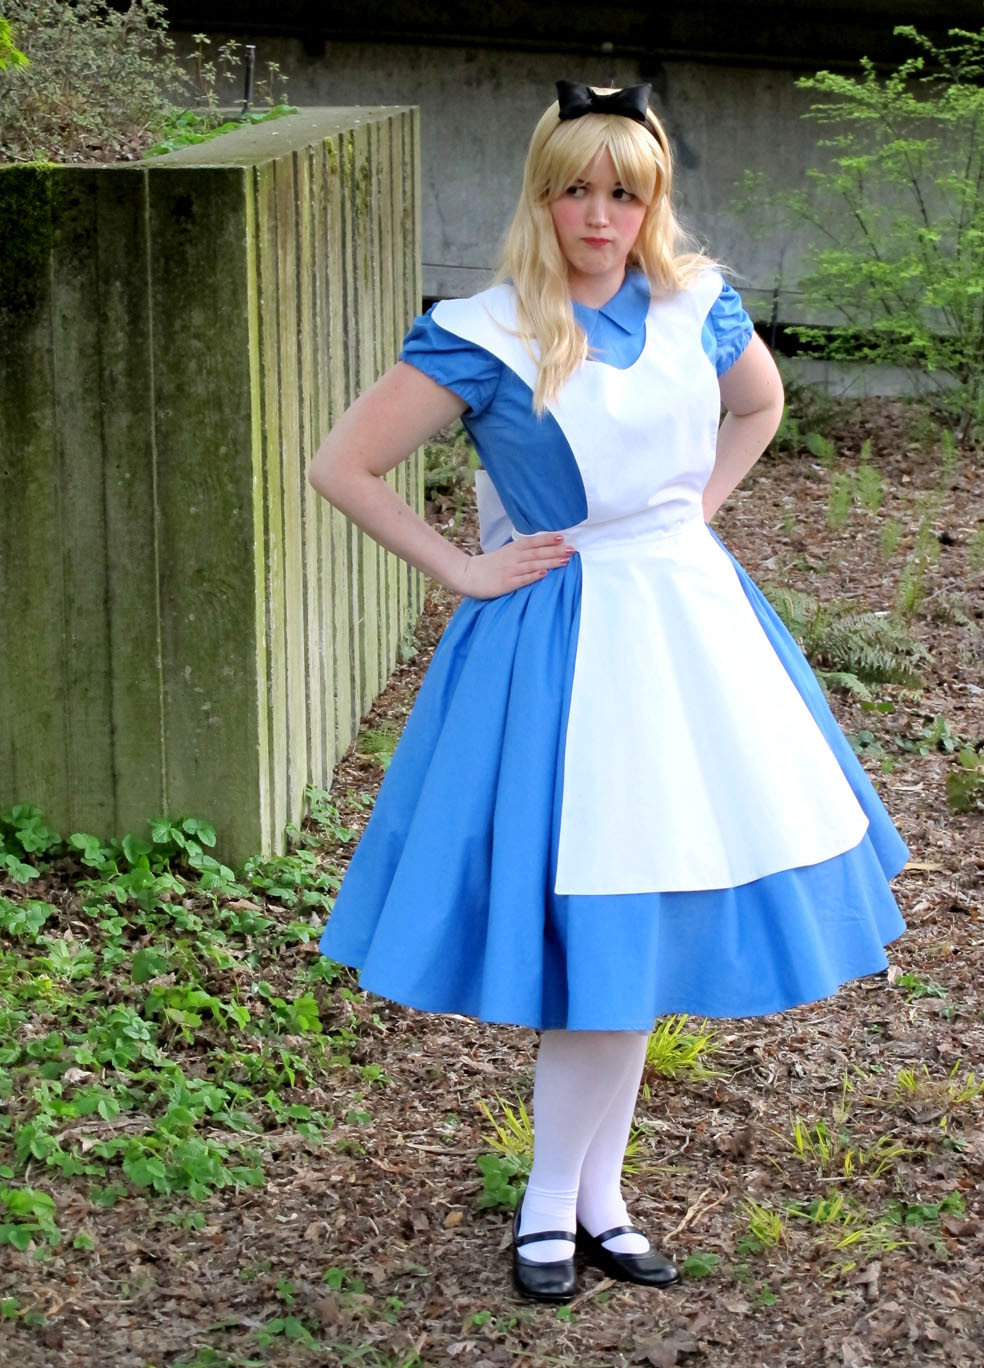 Best ideas about Alice In Wonderland DIY Costume
. Save or Pin alice in wonderland costume Now.